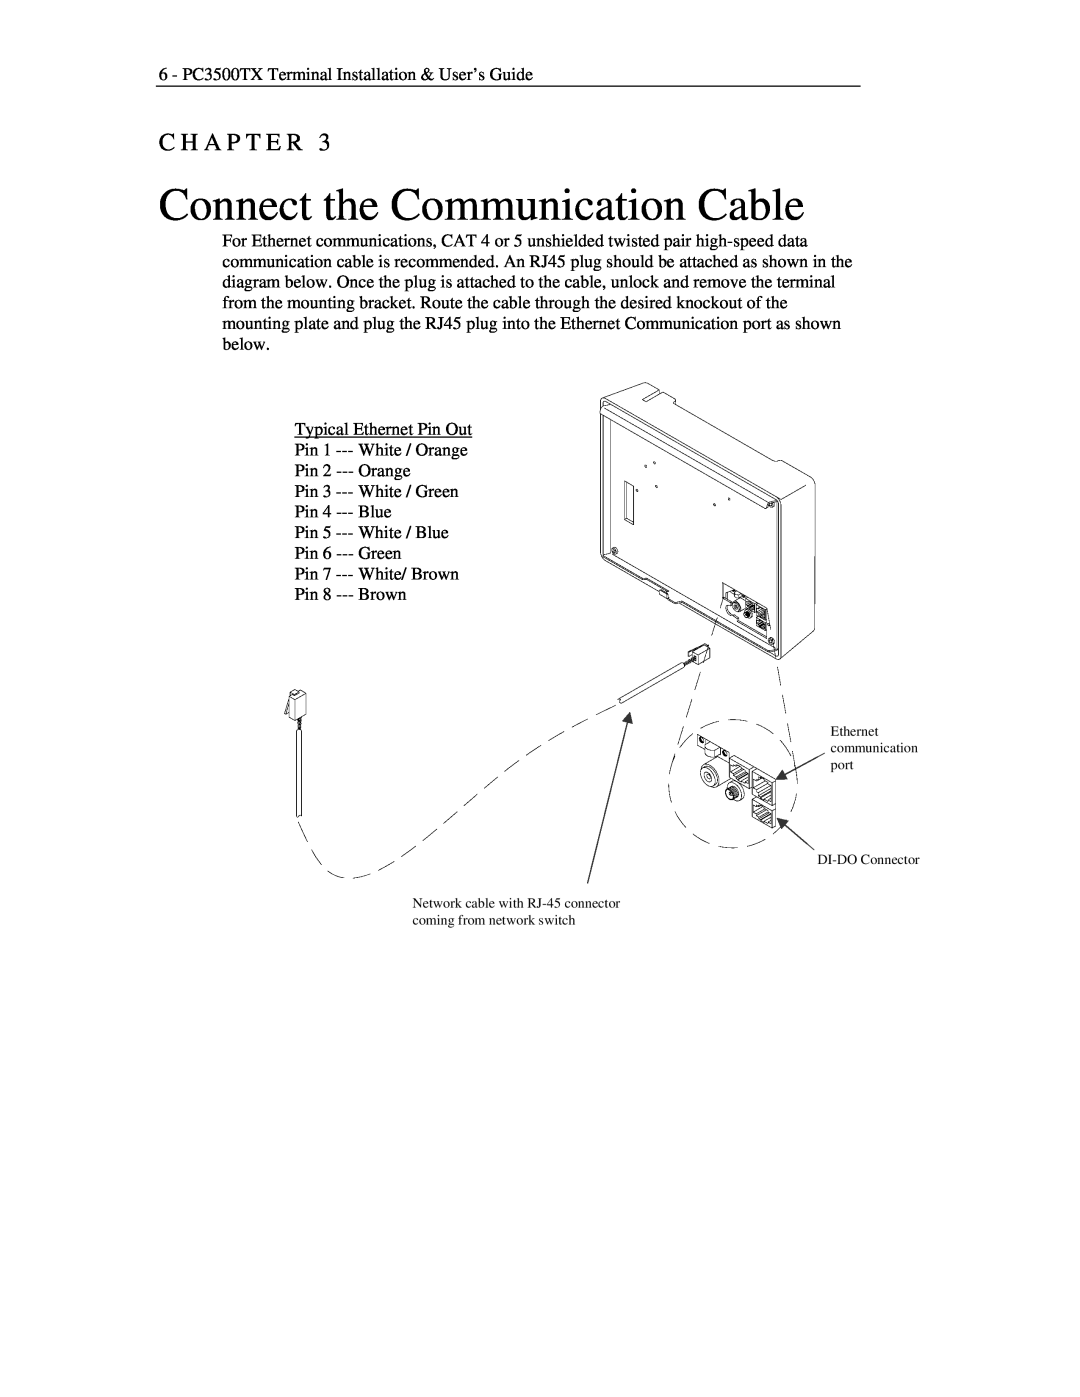 Lathem PC3500TX manual Connect the Communication Cable, C H A P T E R 